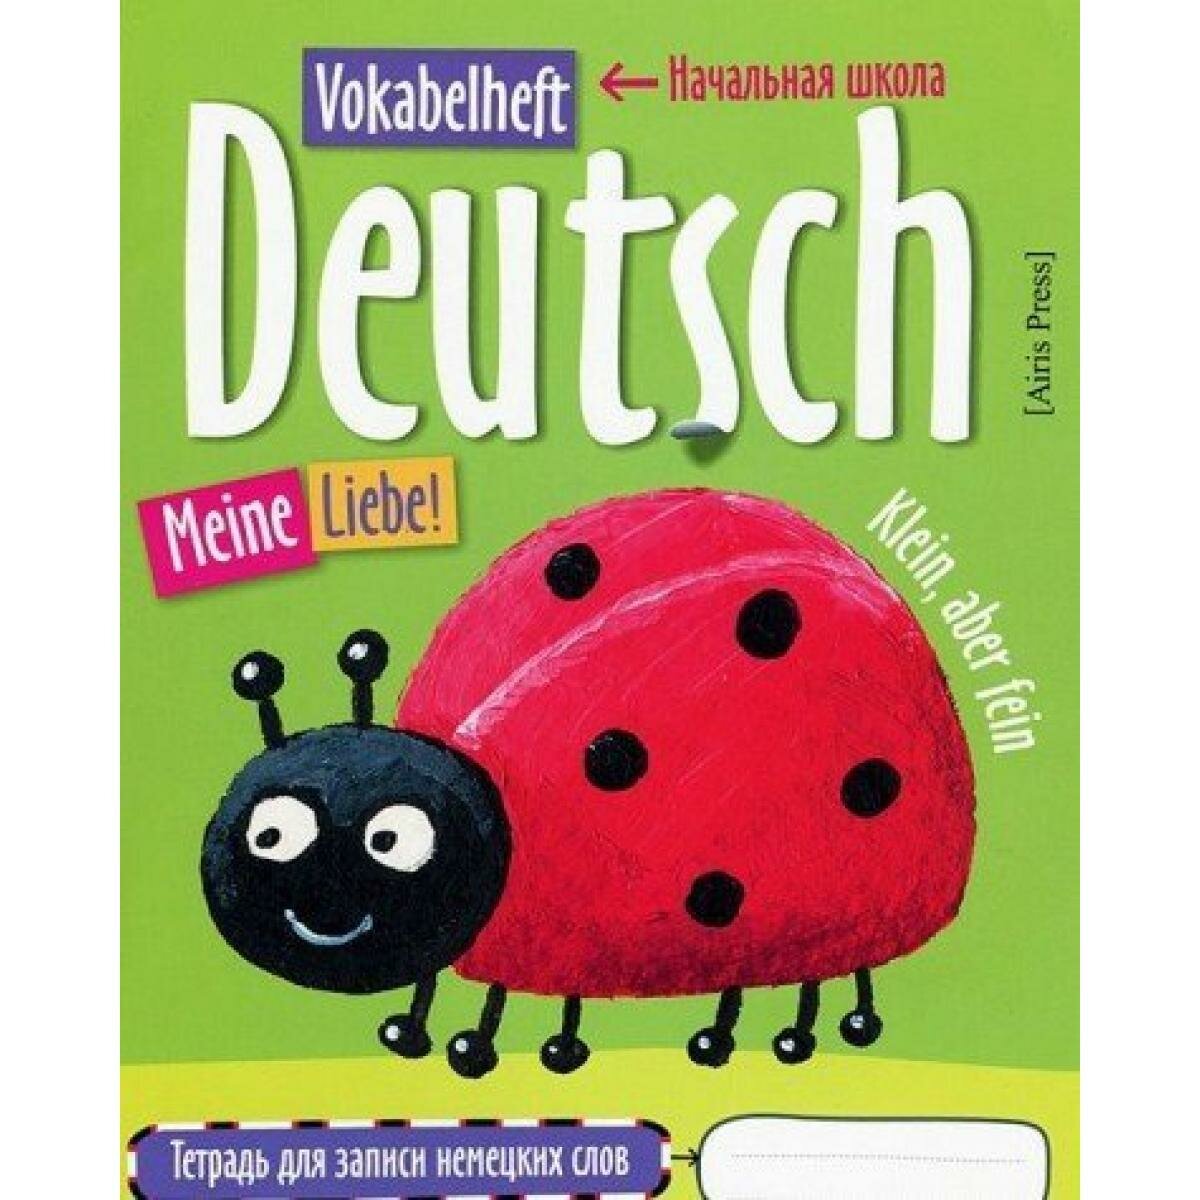 Тетрадь для записи немецких слов в начальной школе (Божья коровка)